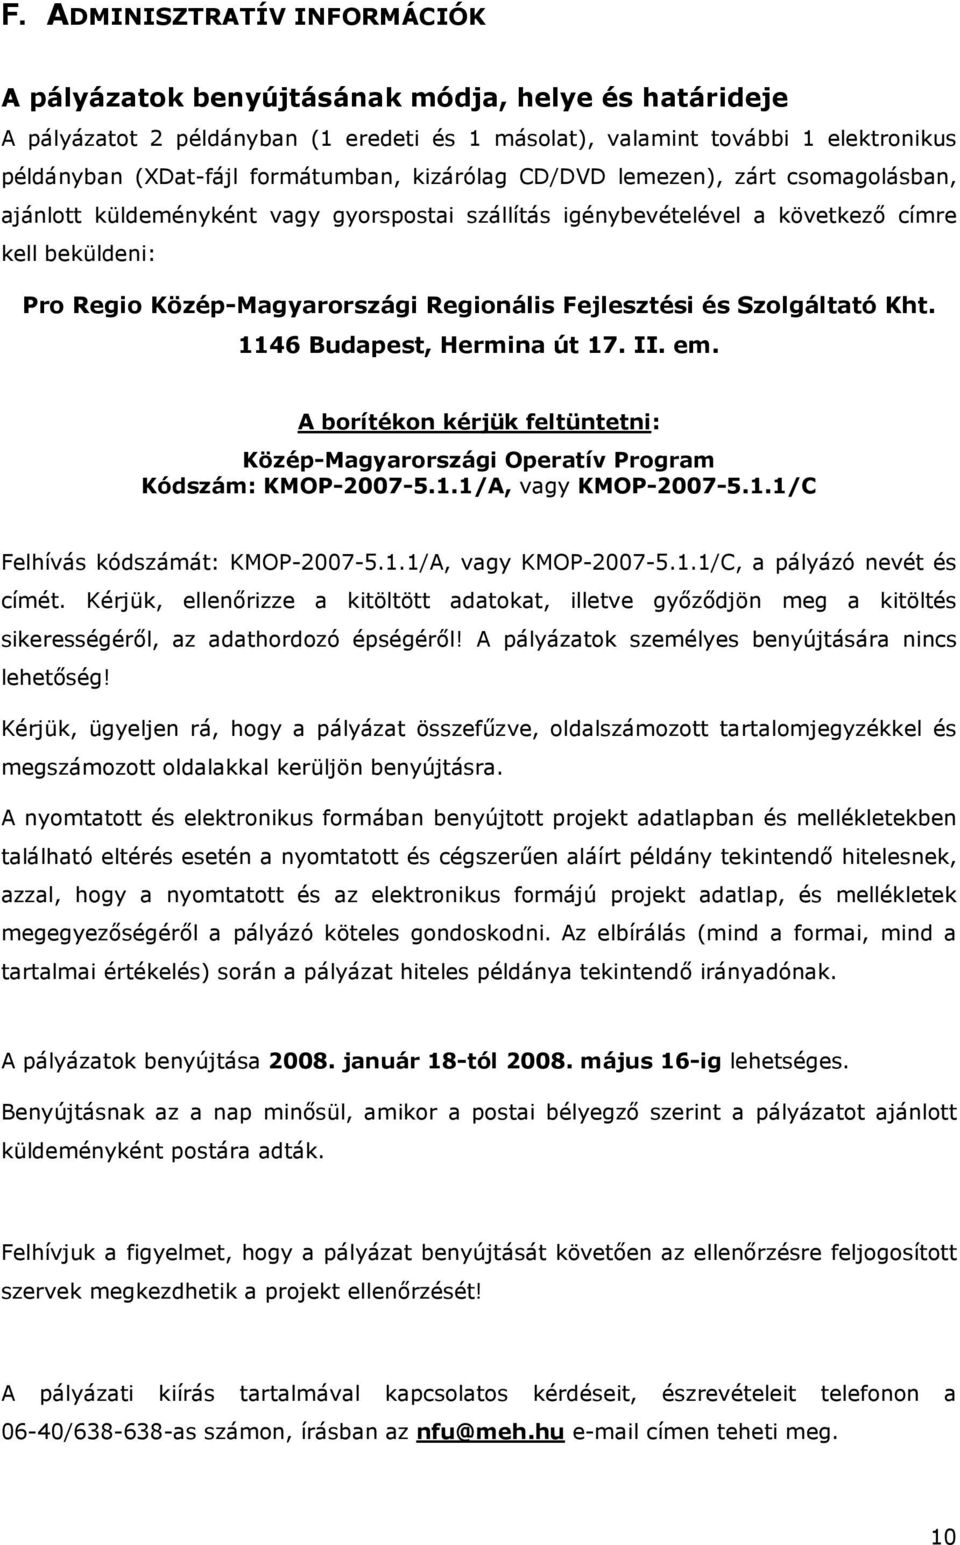 Regionális Fejlesztési és Szolgáltató Kht. 1146 Budapest, Hermina út 17. II. em. A borítékon kérjük feltüntetni: Közép-Magyarországi Operatív Program Kódszám: KMOP-2007-5.1.1/A, vagy KMOP-2007-5.1.1/C Felhívás kódszámát: KMOP-2007-5.